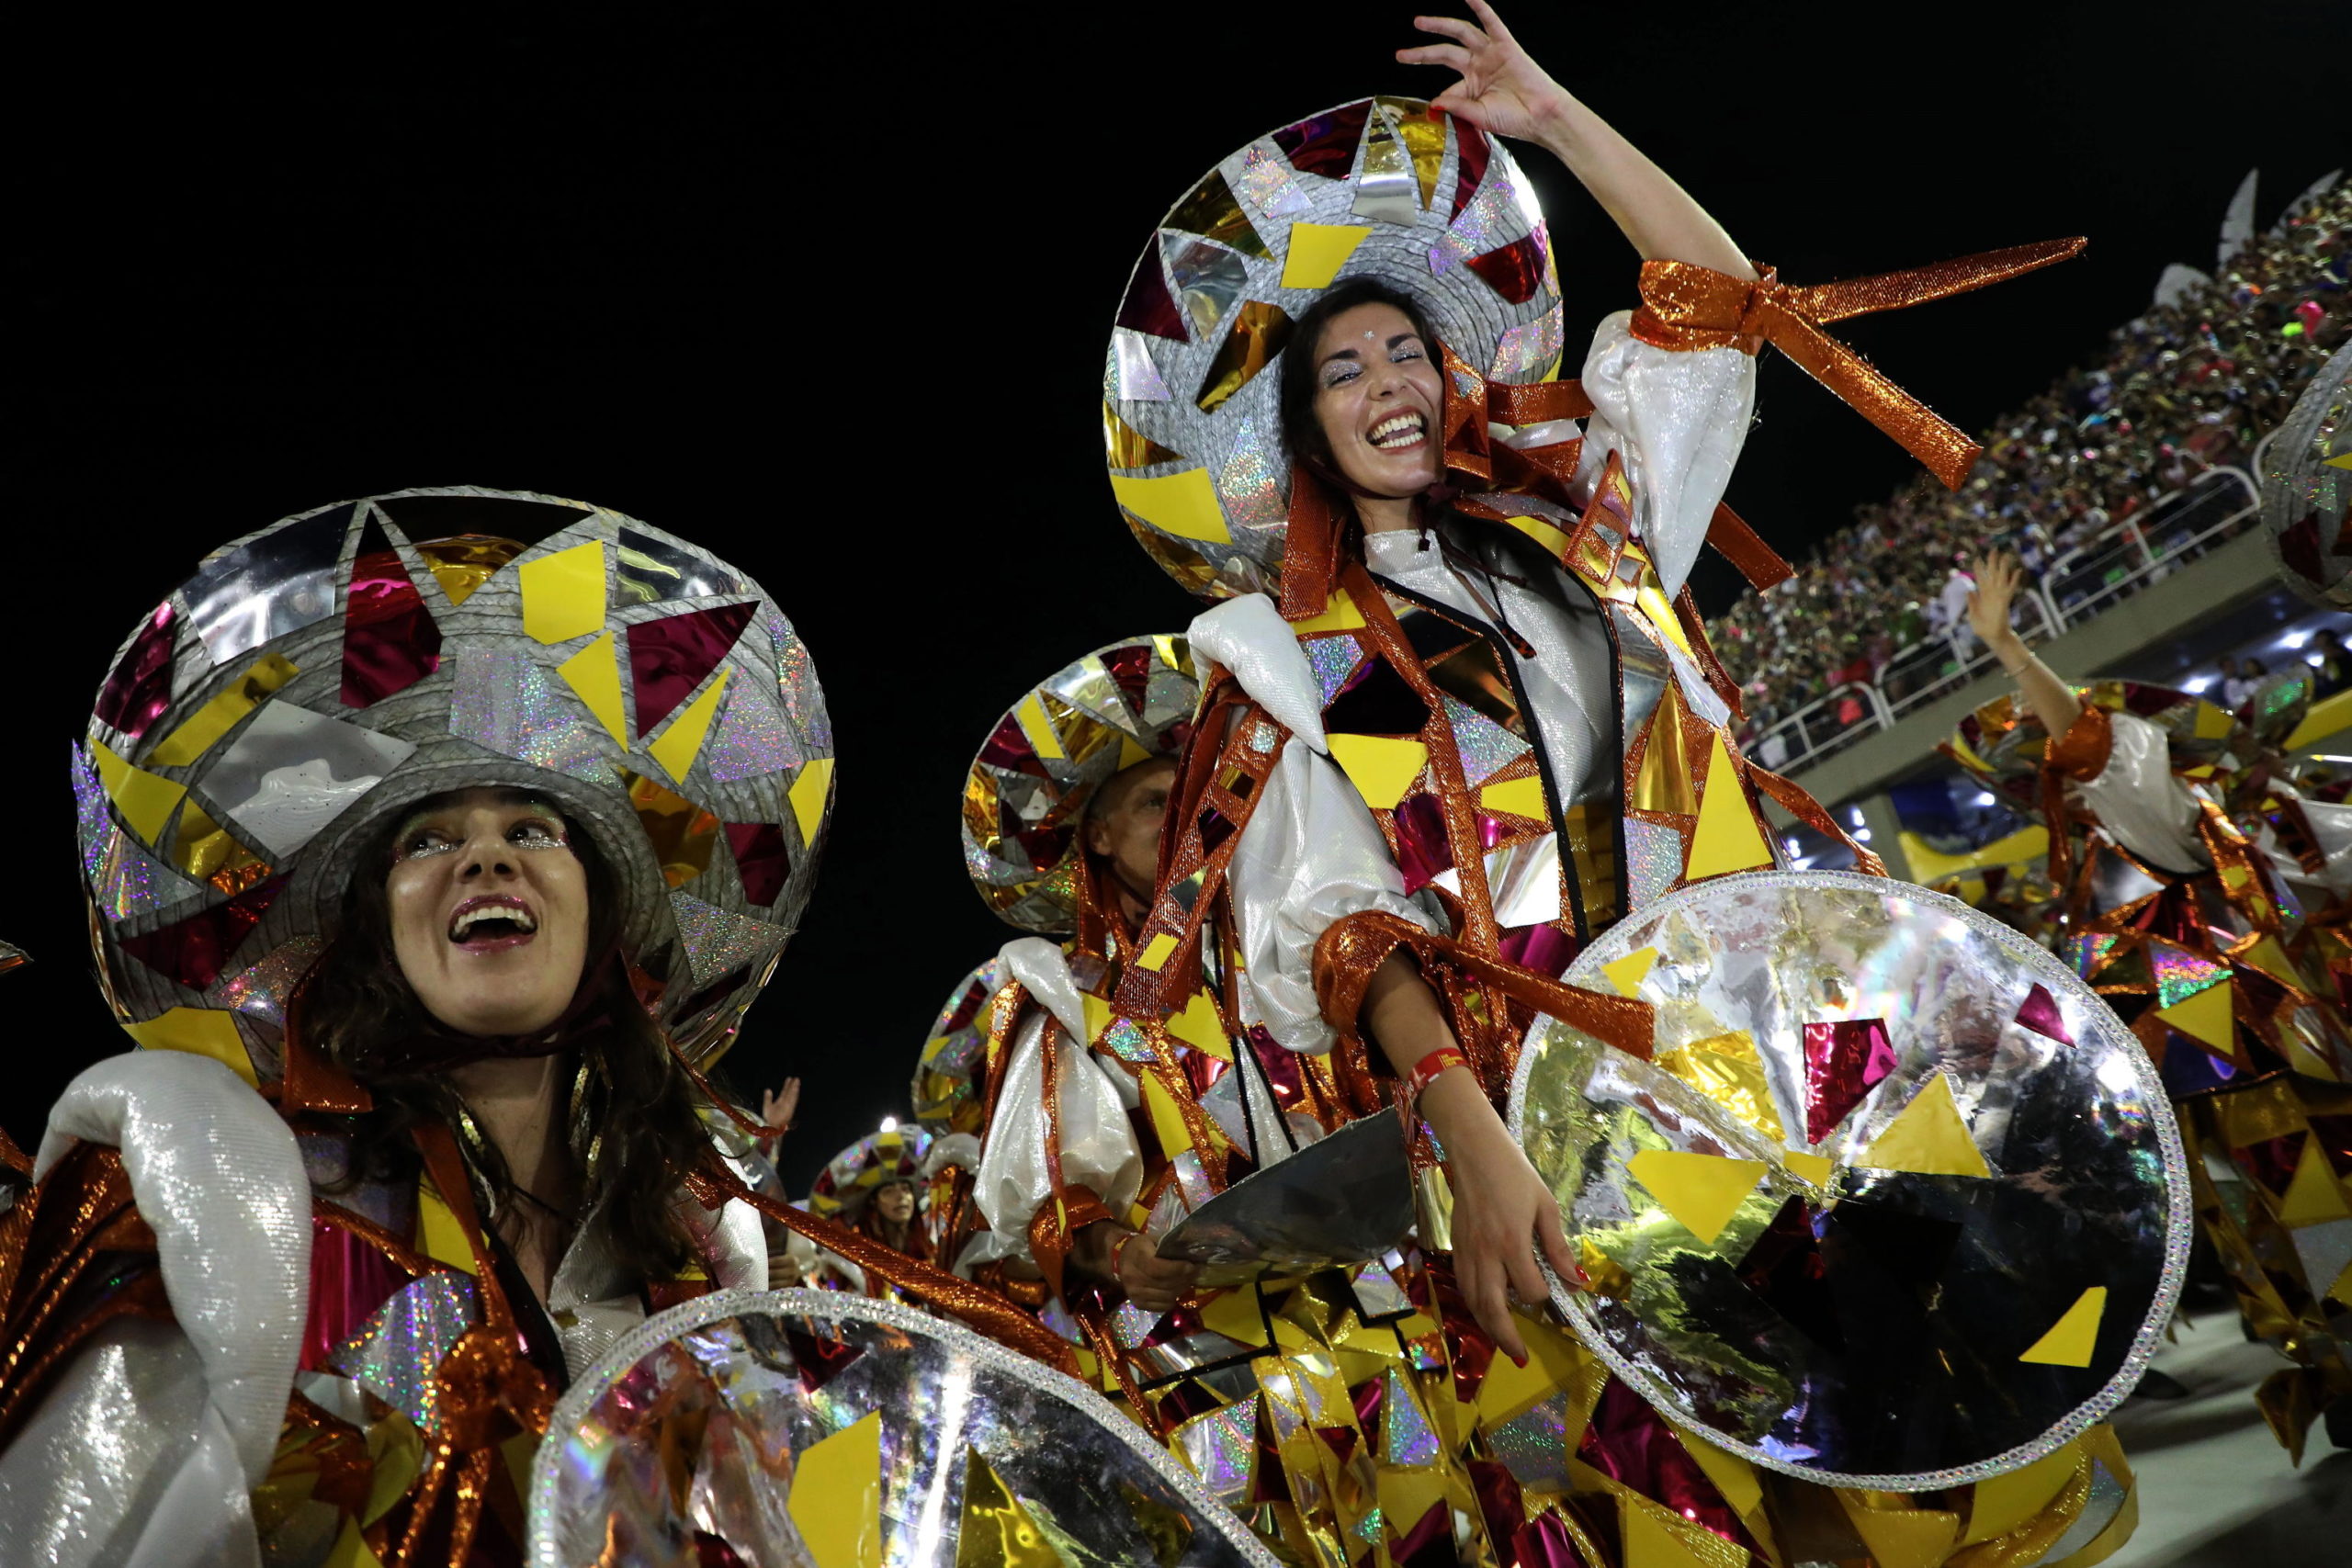 Ballerine danzano a ritmo di musica durante il più importante carnevale brasiliano